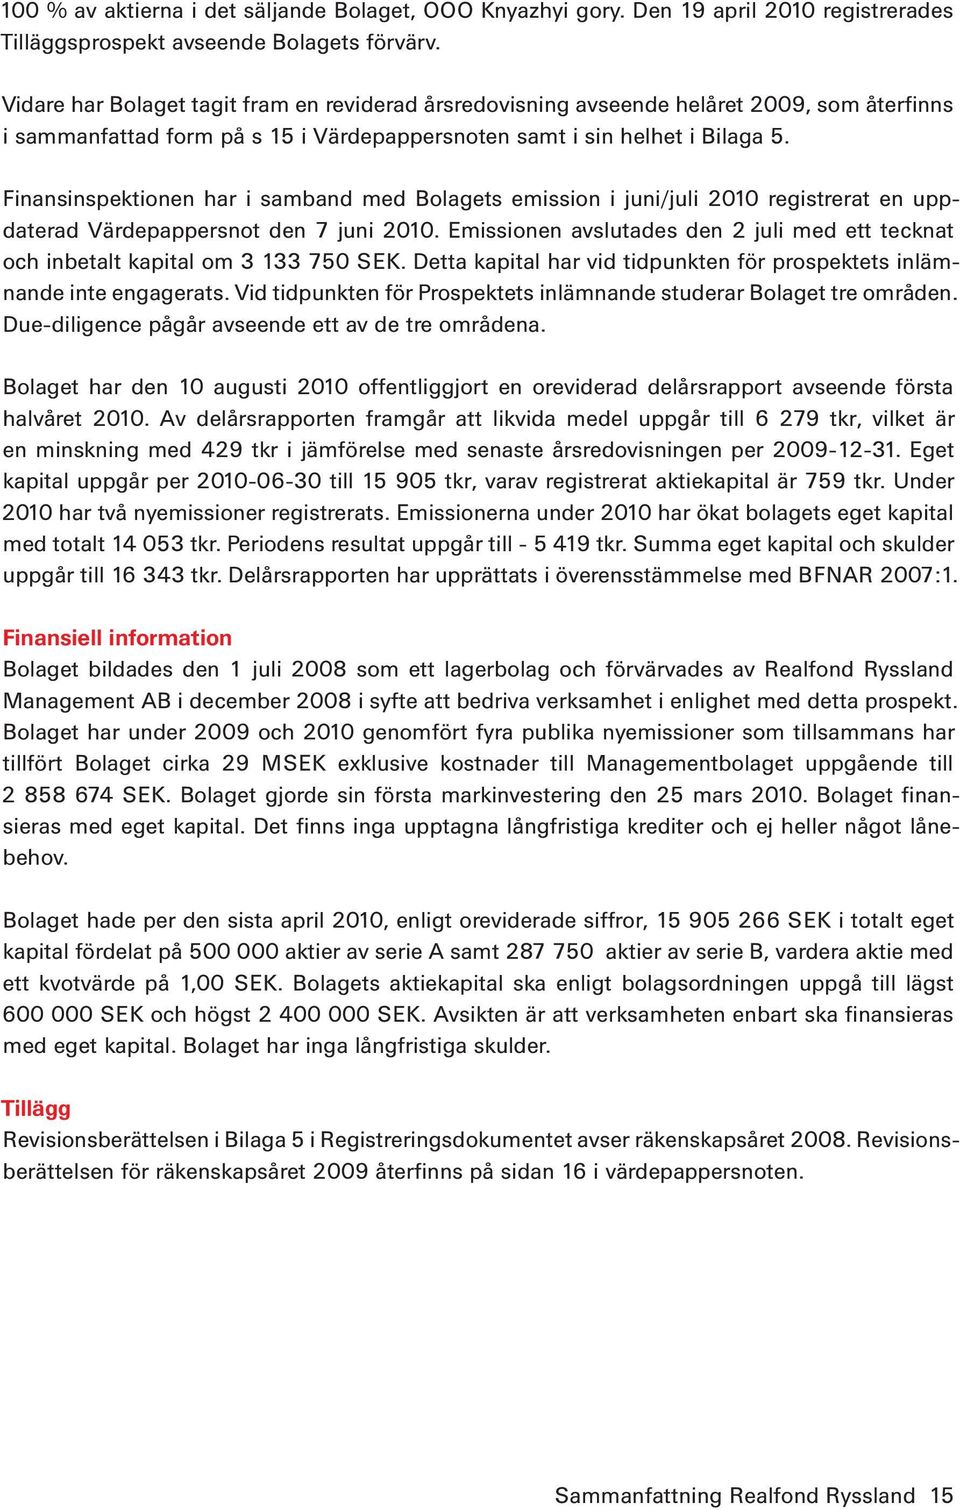 Finansinspektionen har i samband med Bolagets emission i juni/juli 2010 registrerat en uppdaterad Värdepappersnot den 7 juni 2010.